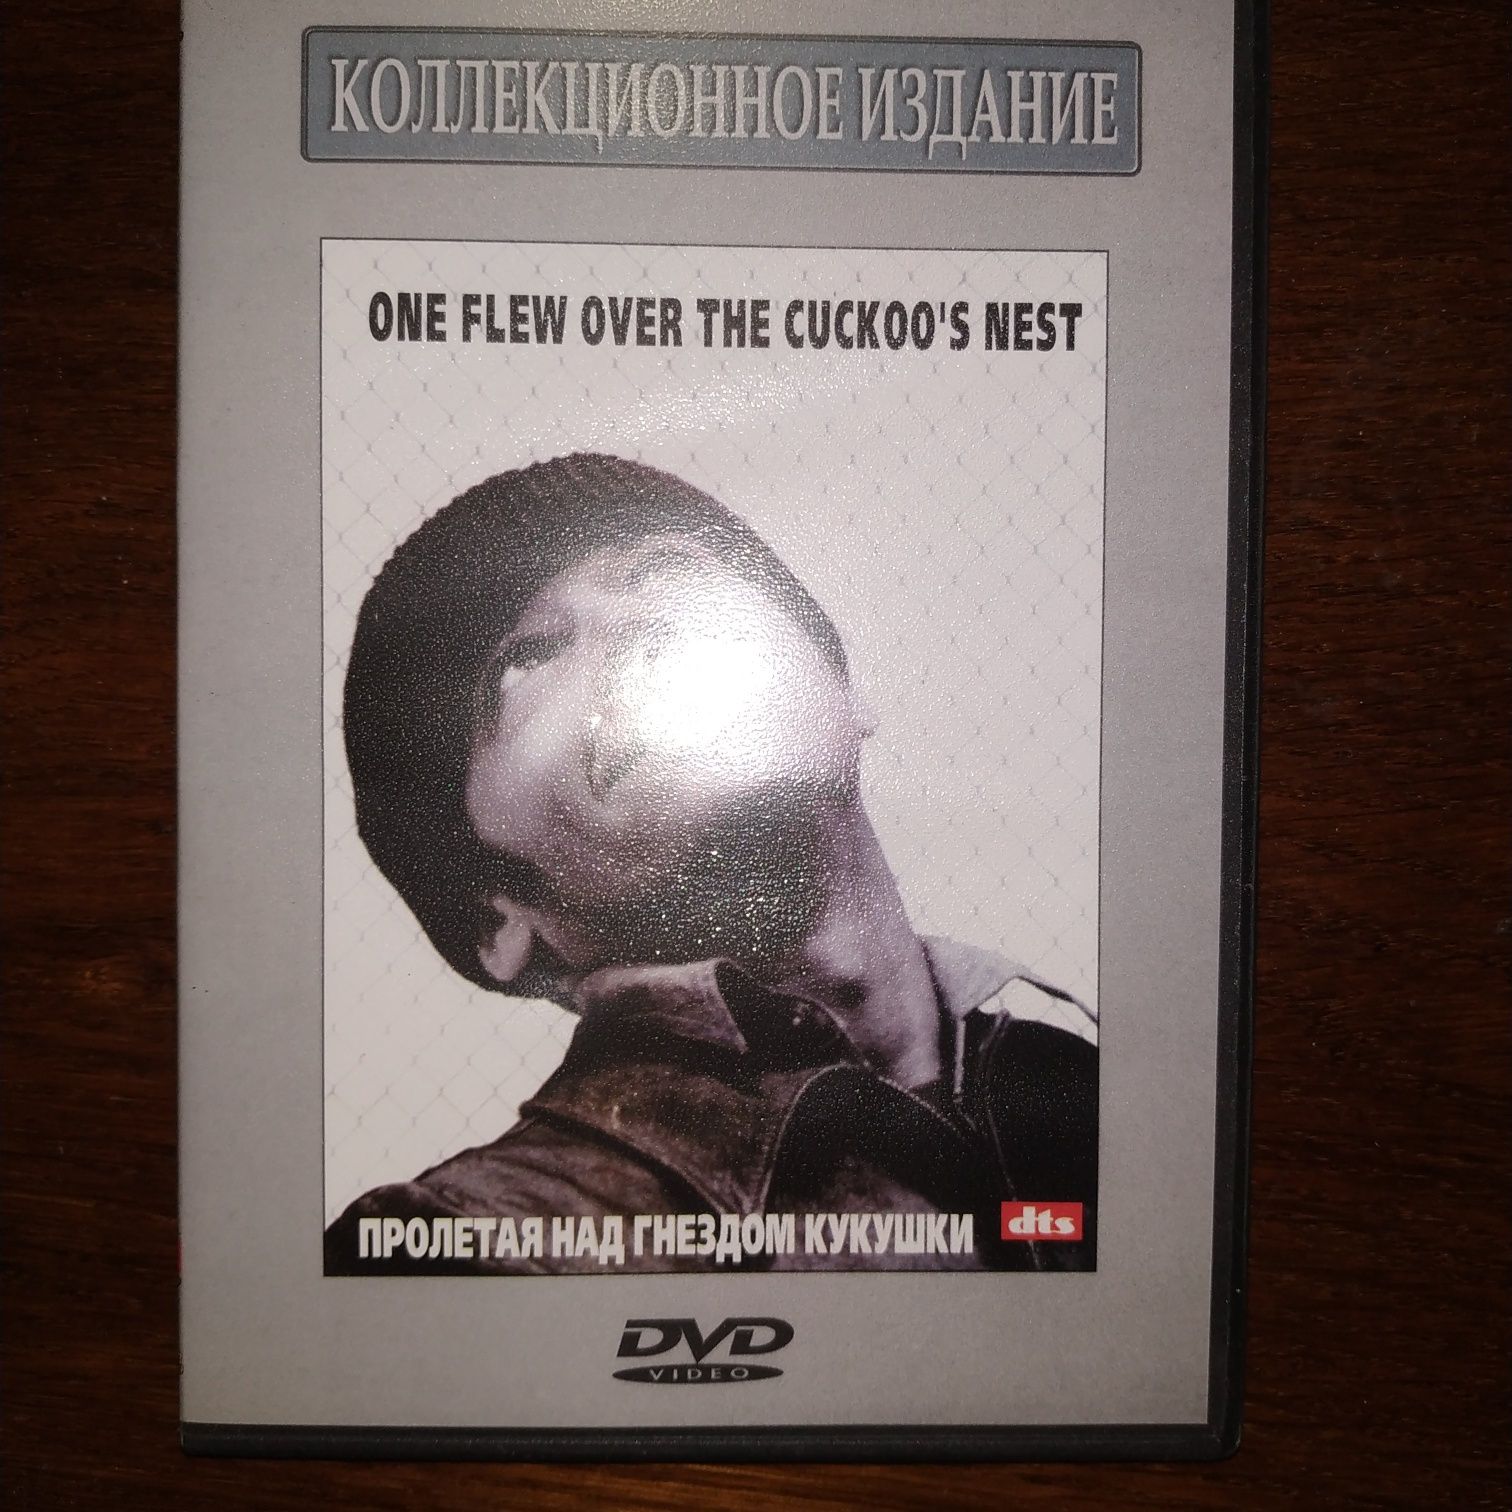 ДВД диск Superbit с фильмом Пролетая над гнездом кукушки